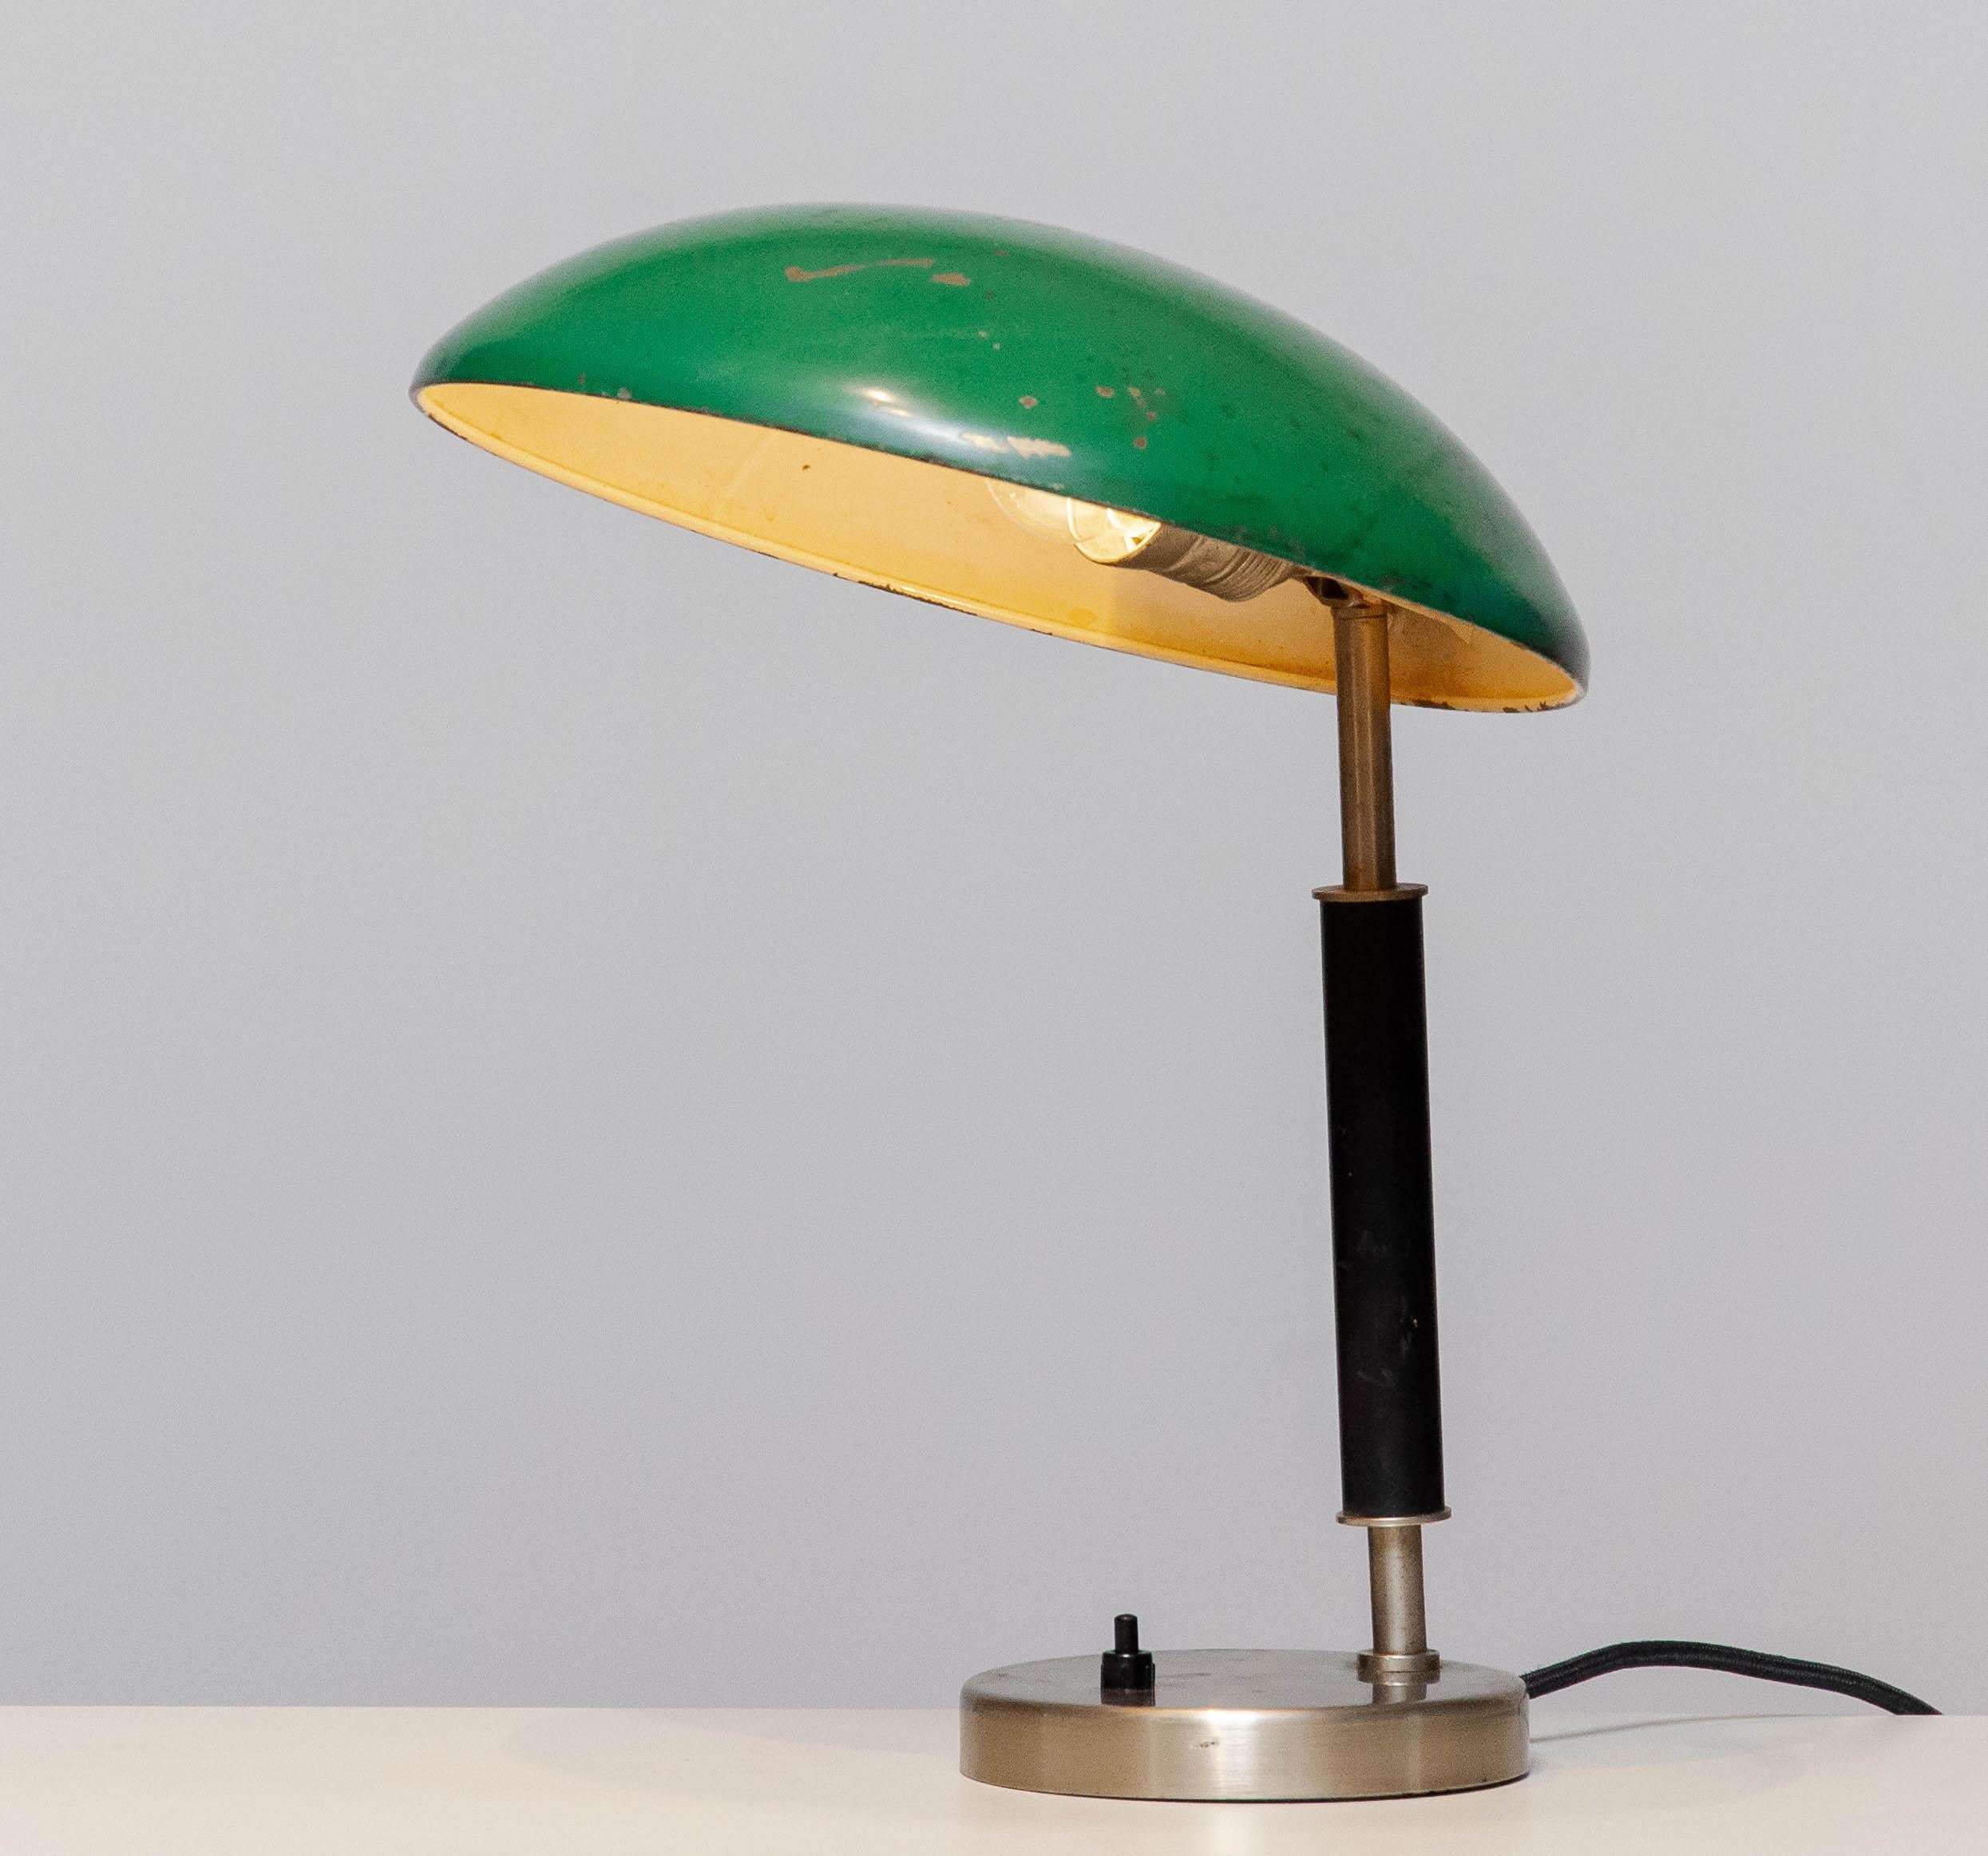 Schöne industrielle Tischlampe / Schreibtischlampe aus den 1930er Jahren, entworfen von Harald Notini für Arvid Böhlmarks Lampfabrik AB Stockholm Schweden.
Der grün lackierte Schirm ist aus Messing und hinter der klaren Metallabdeckung des Sockels